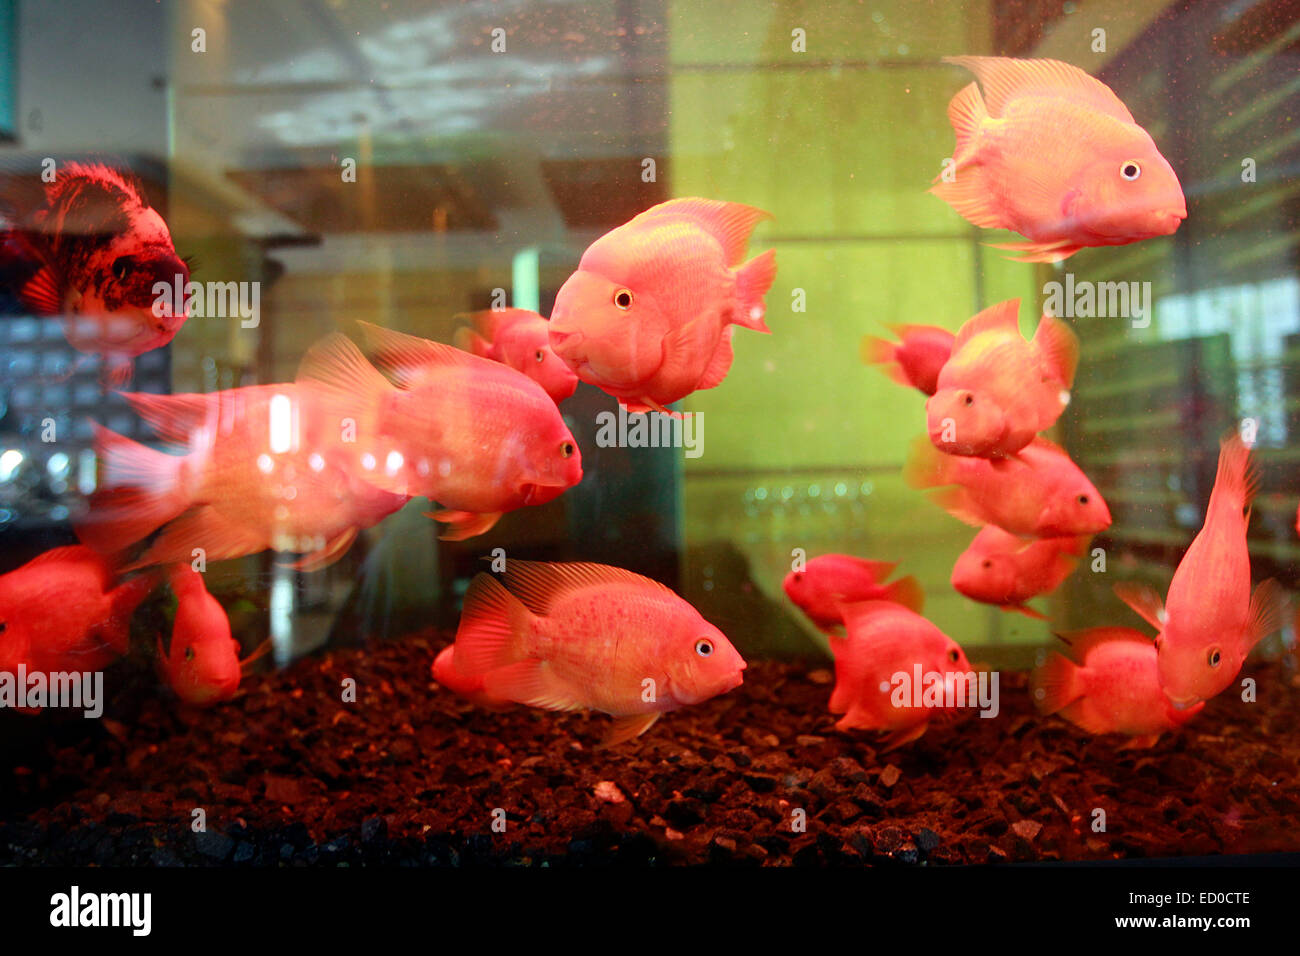 Goldfish (Carassius auratus). veiltails in an aquarium. Stock Photo